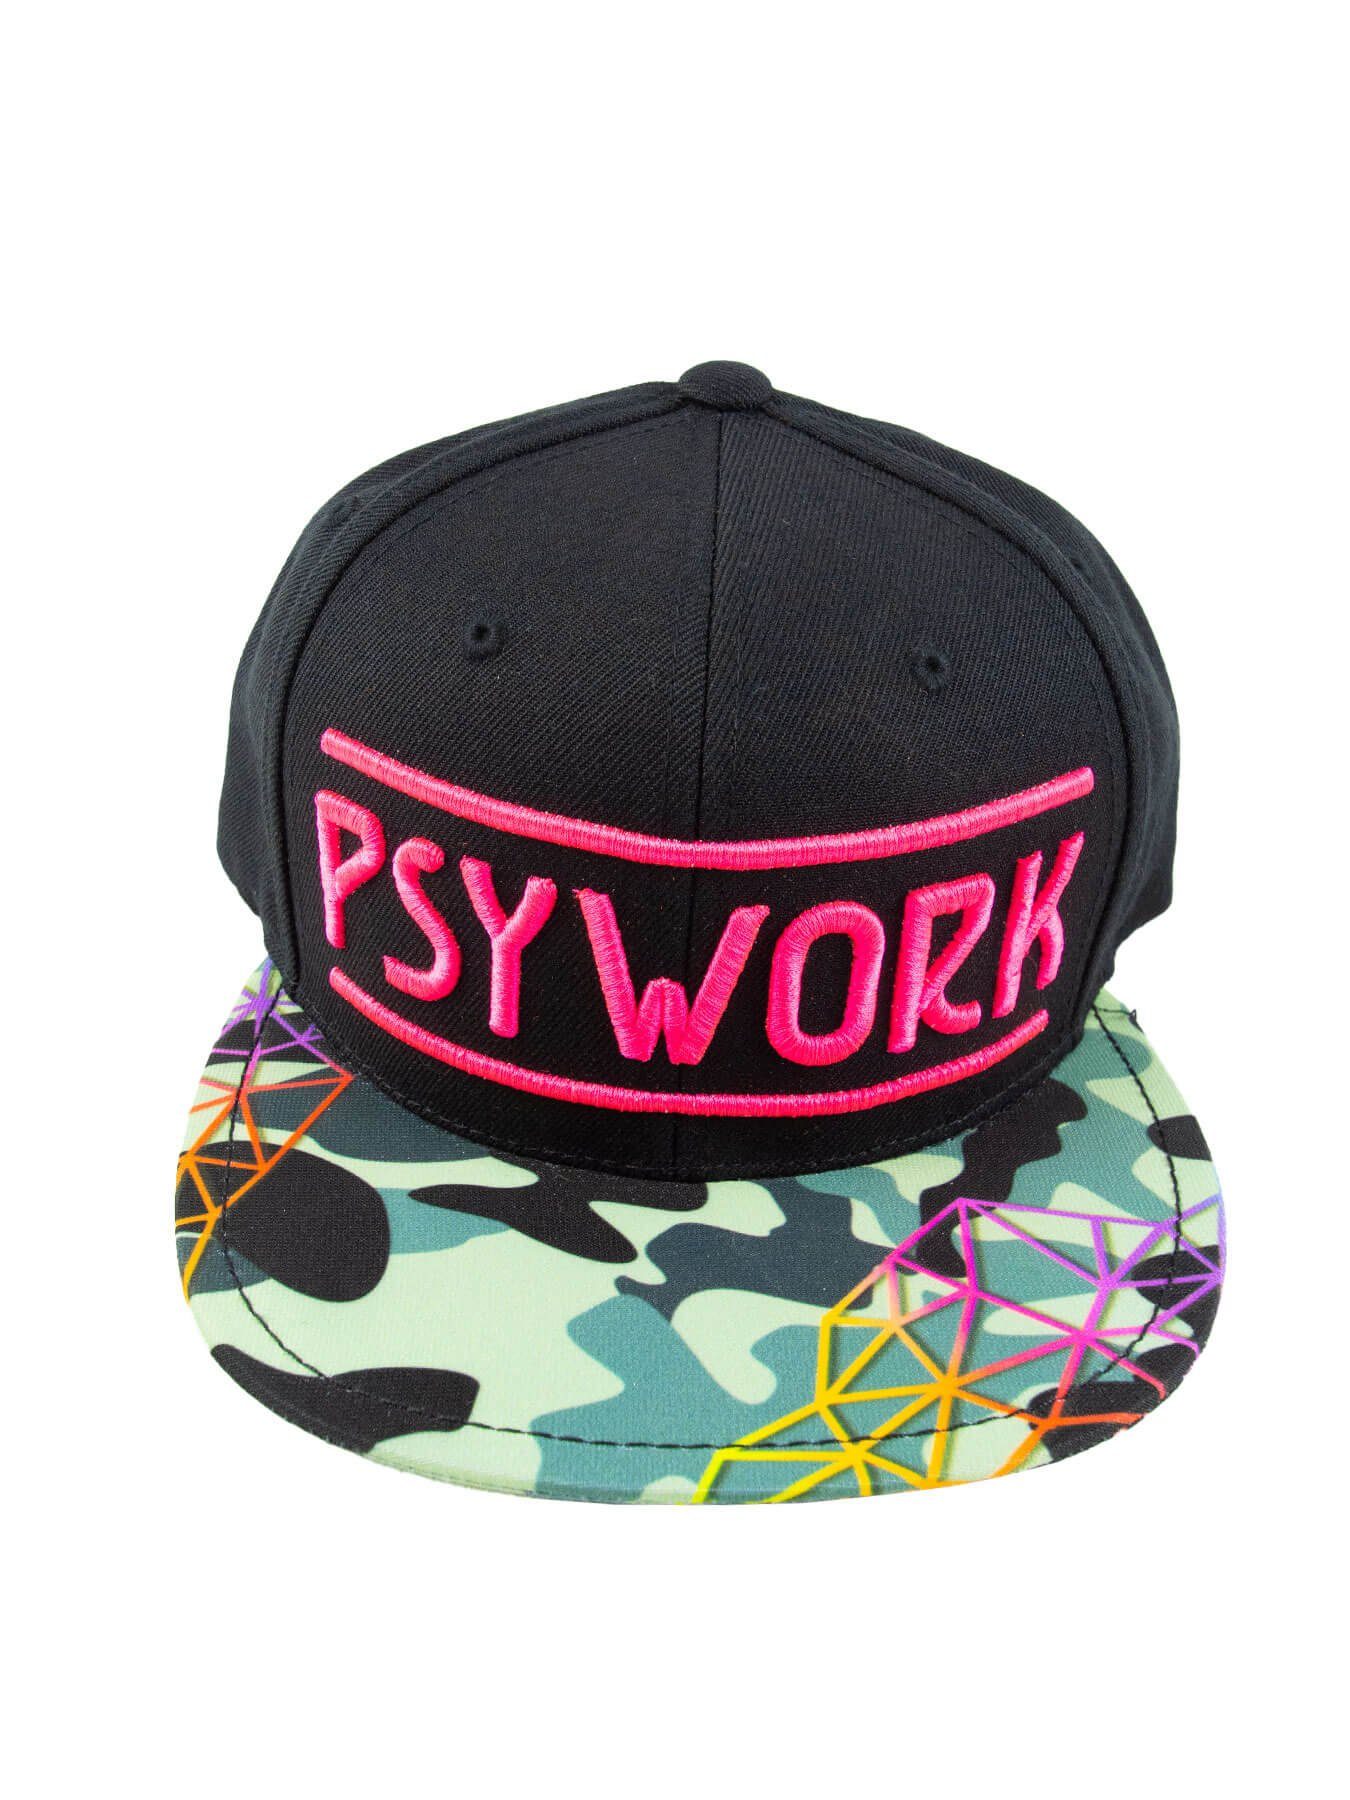 PSYWORK Snapback Cap Schwarzlicht Black Cap Neon "Camouflage", Pink UV-aktiv, leuchtet unter Schwarzlicht